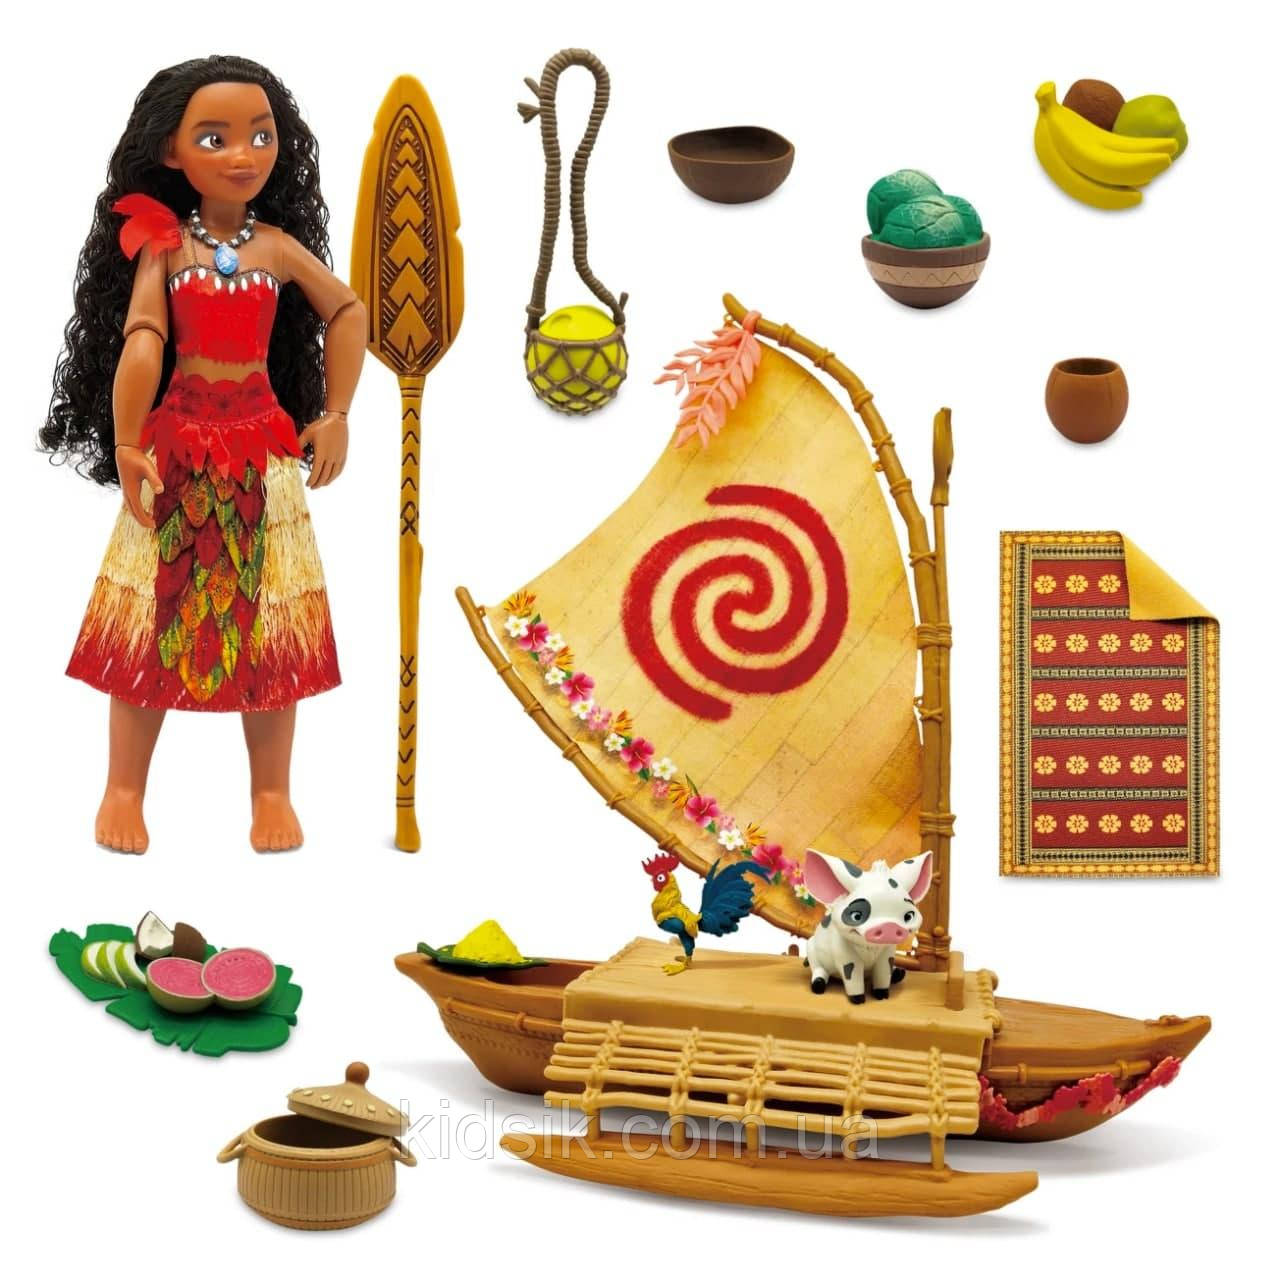 Ігровий набір лялька Моана , фігурки порося Пуа, півня Хей-Хей і каное / Moana Ocean Adventure Classic Dol